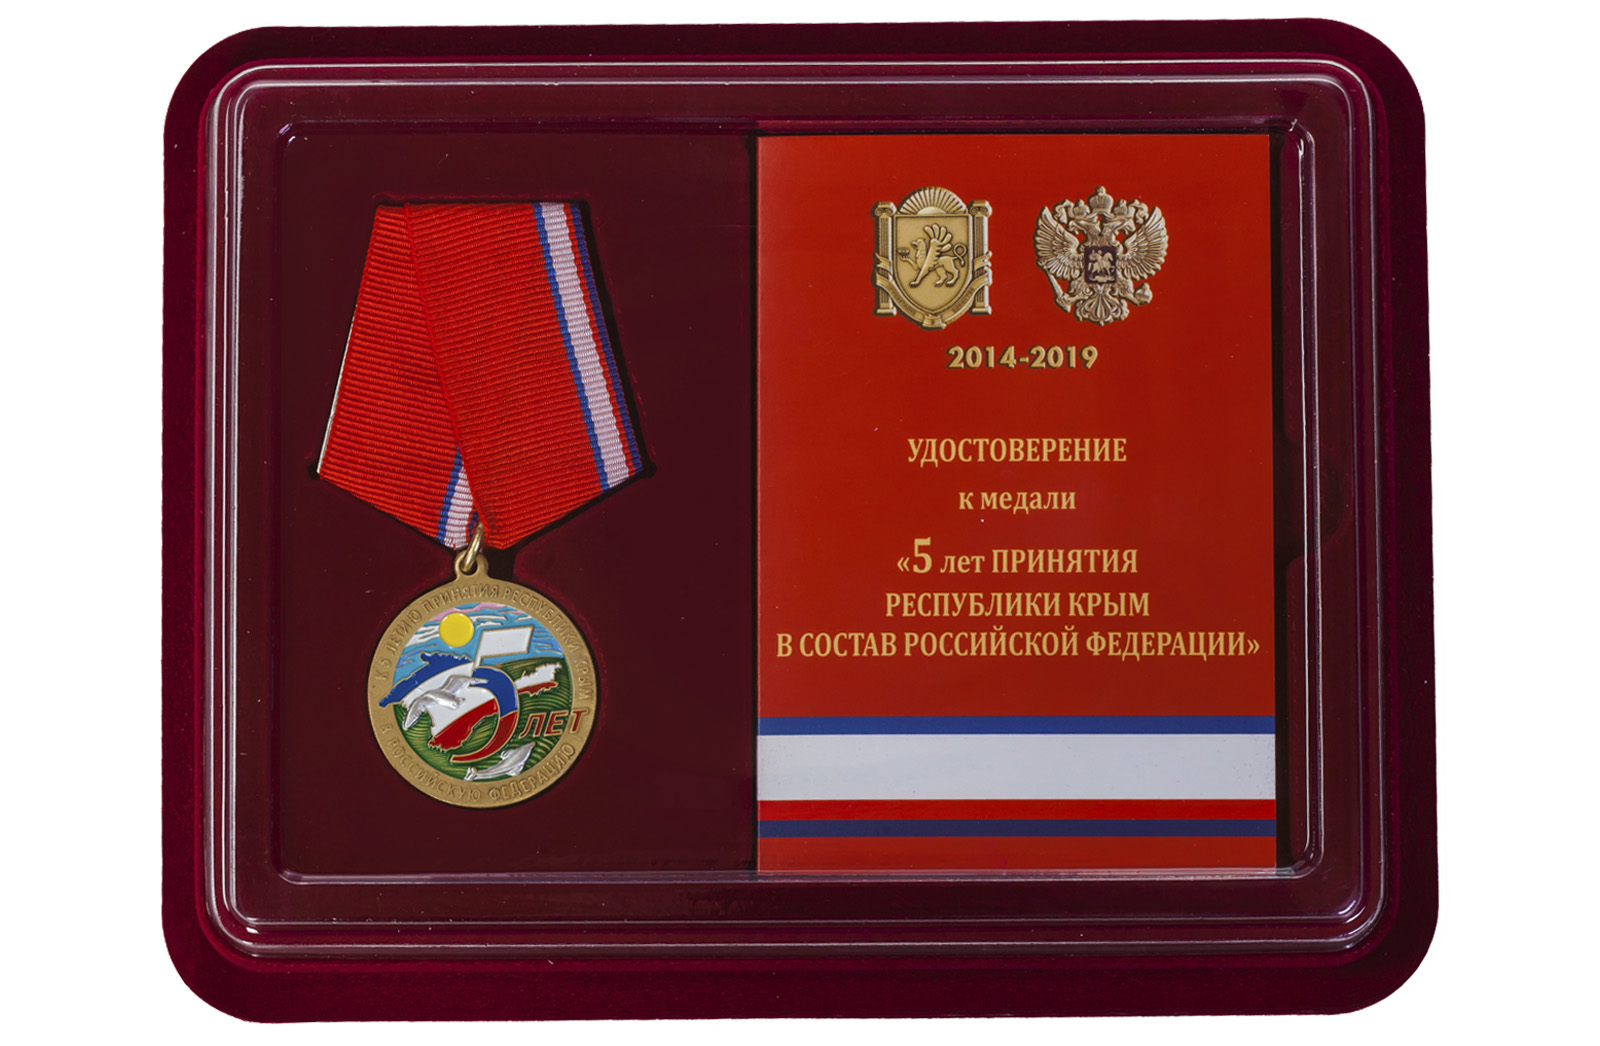 Купить памятную медаль к 5-летию принятия Республики Крым в Российскую Федерацию с доставкой